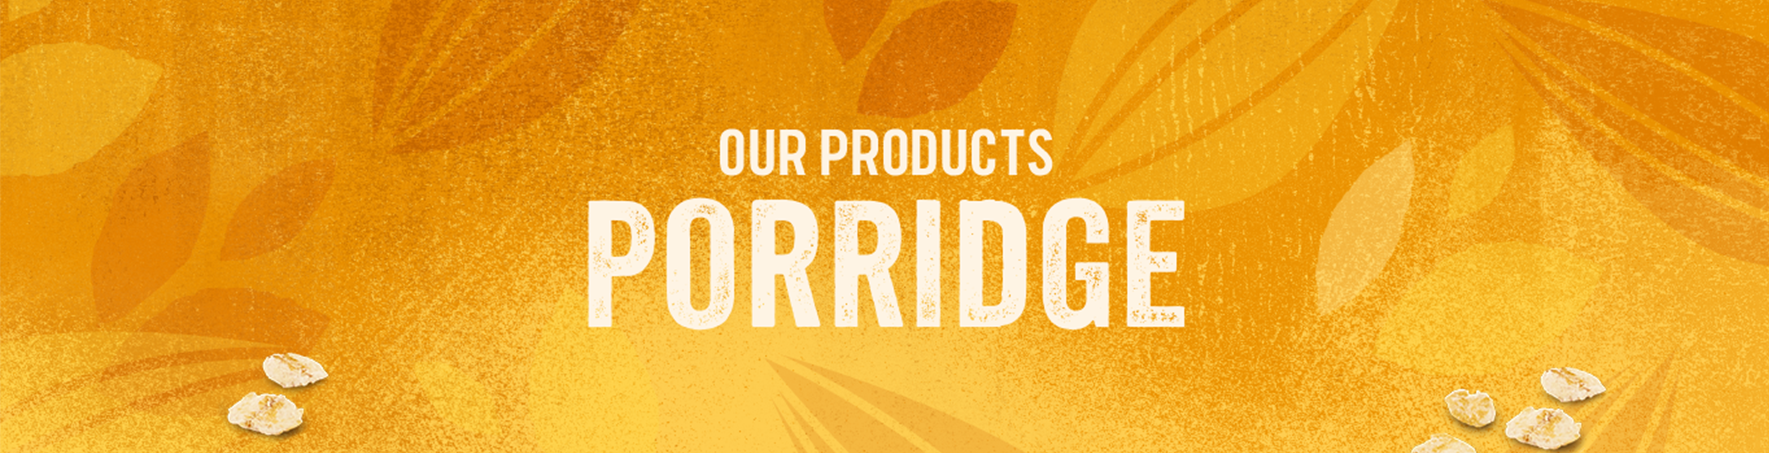 Our products Porridge